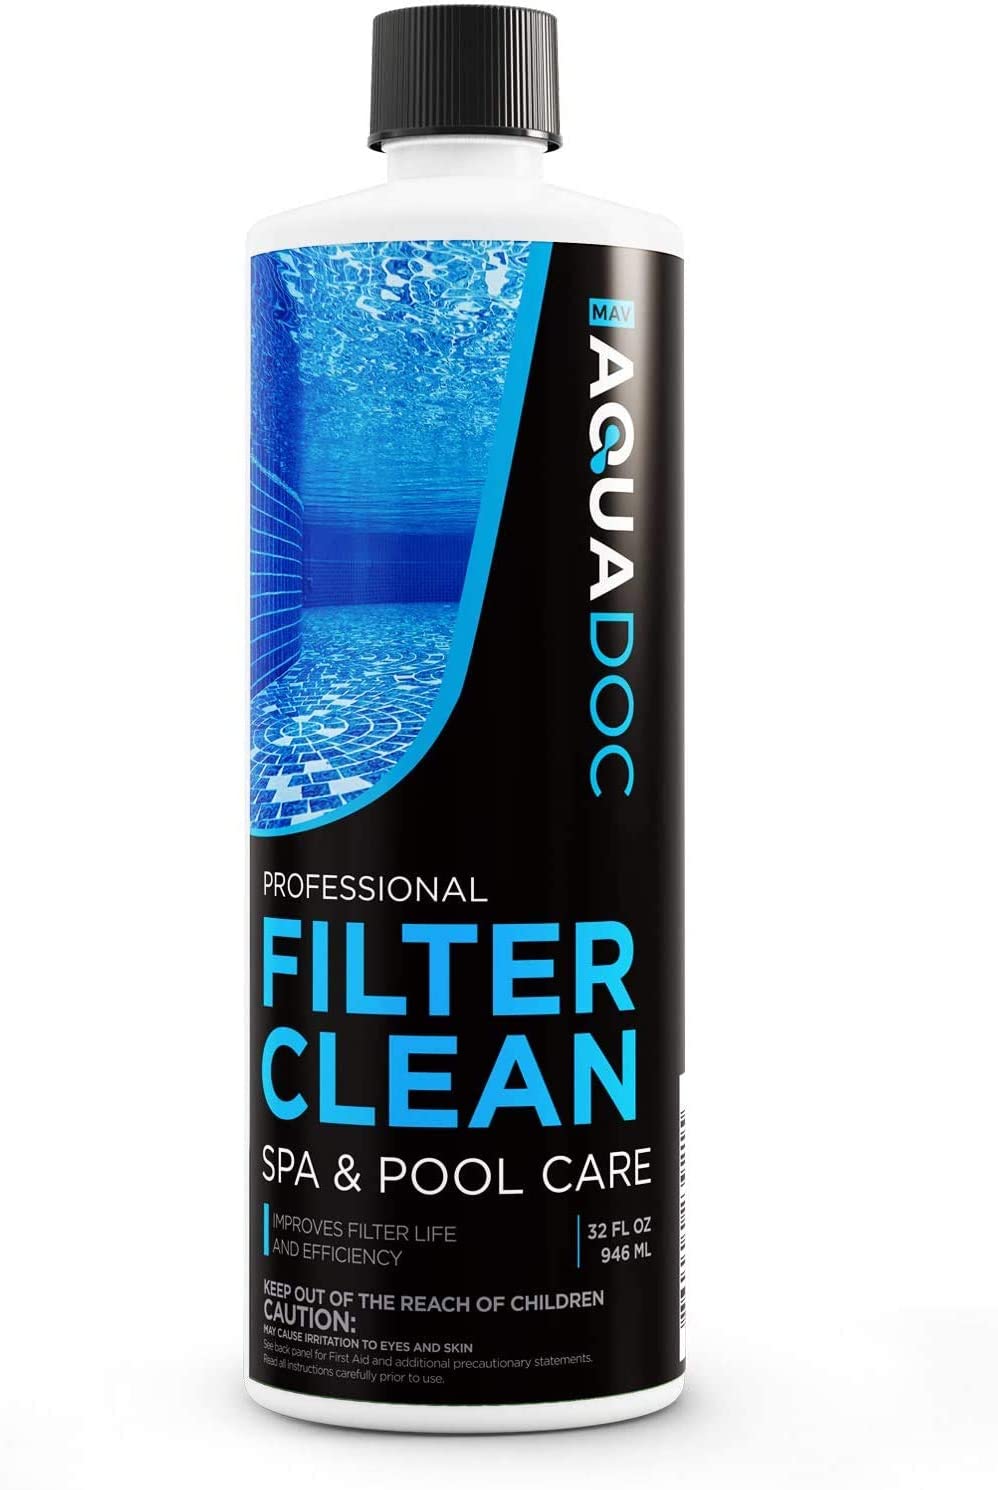 10. Mav AquaDoc Hot Tub Filter Cleaner